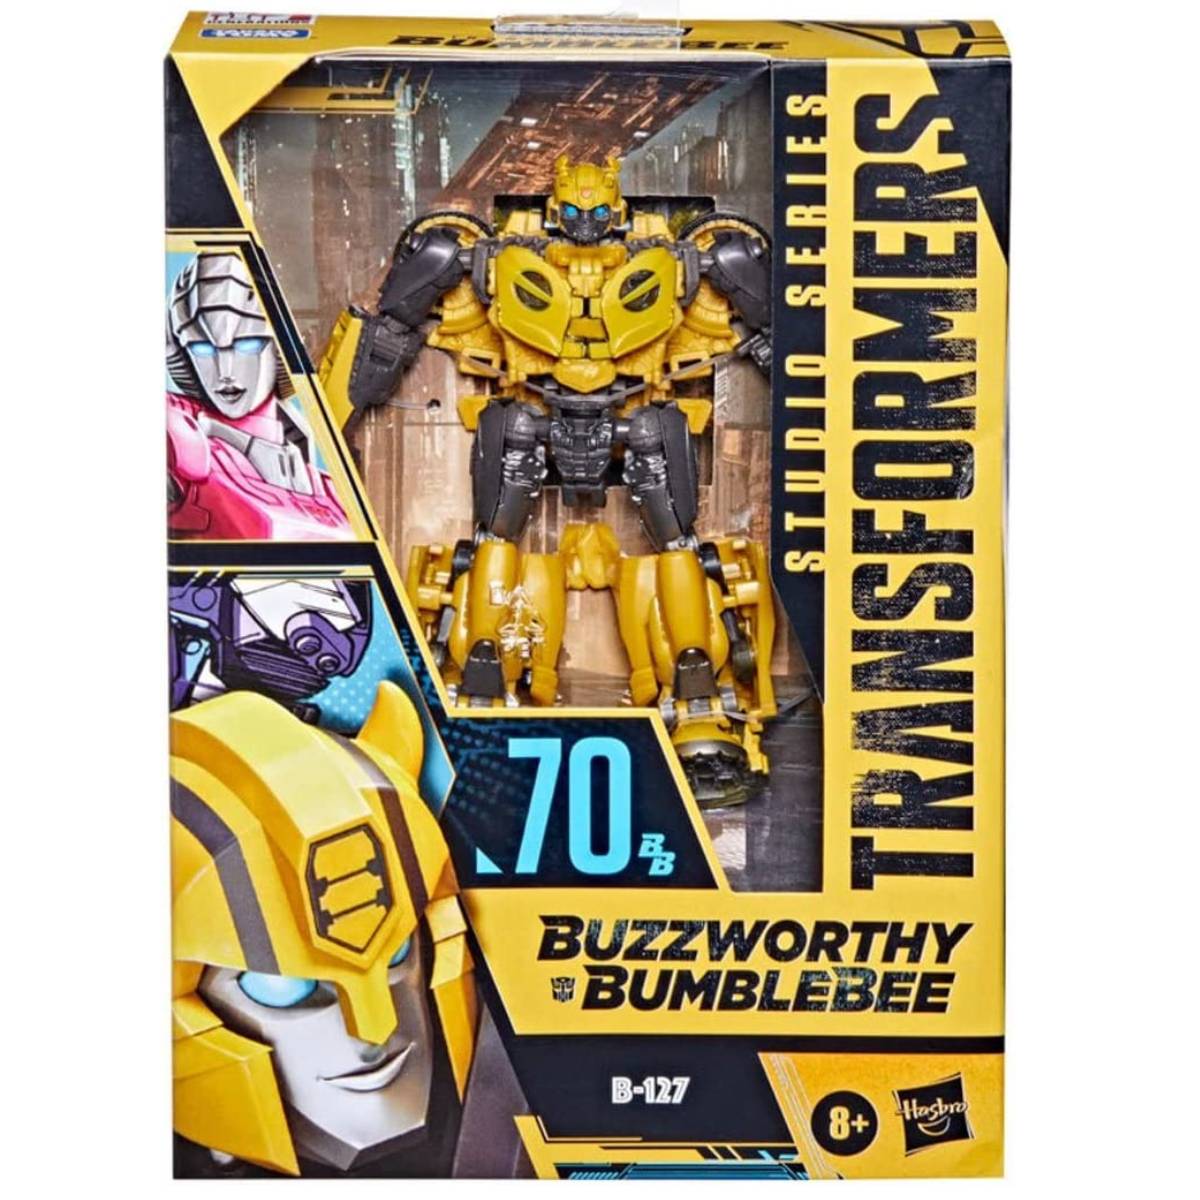 Figurine Transformers Bumblebee Buzzworthy B-127 Studio Series Deluxe